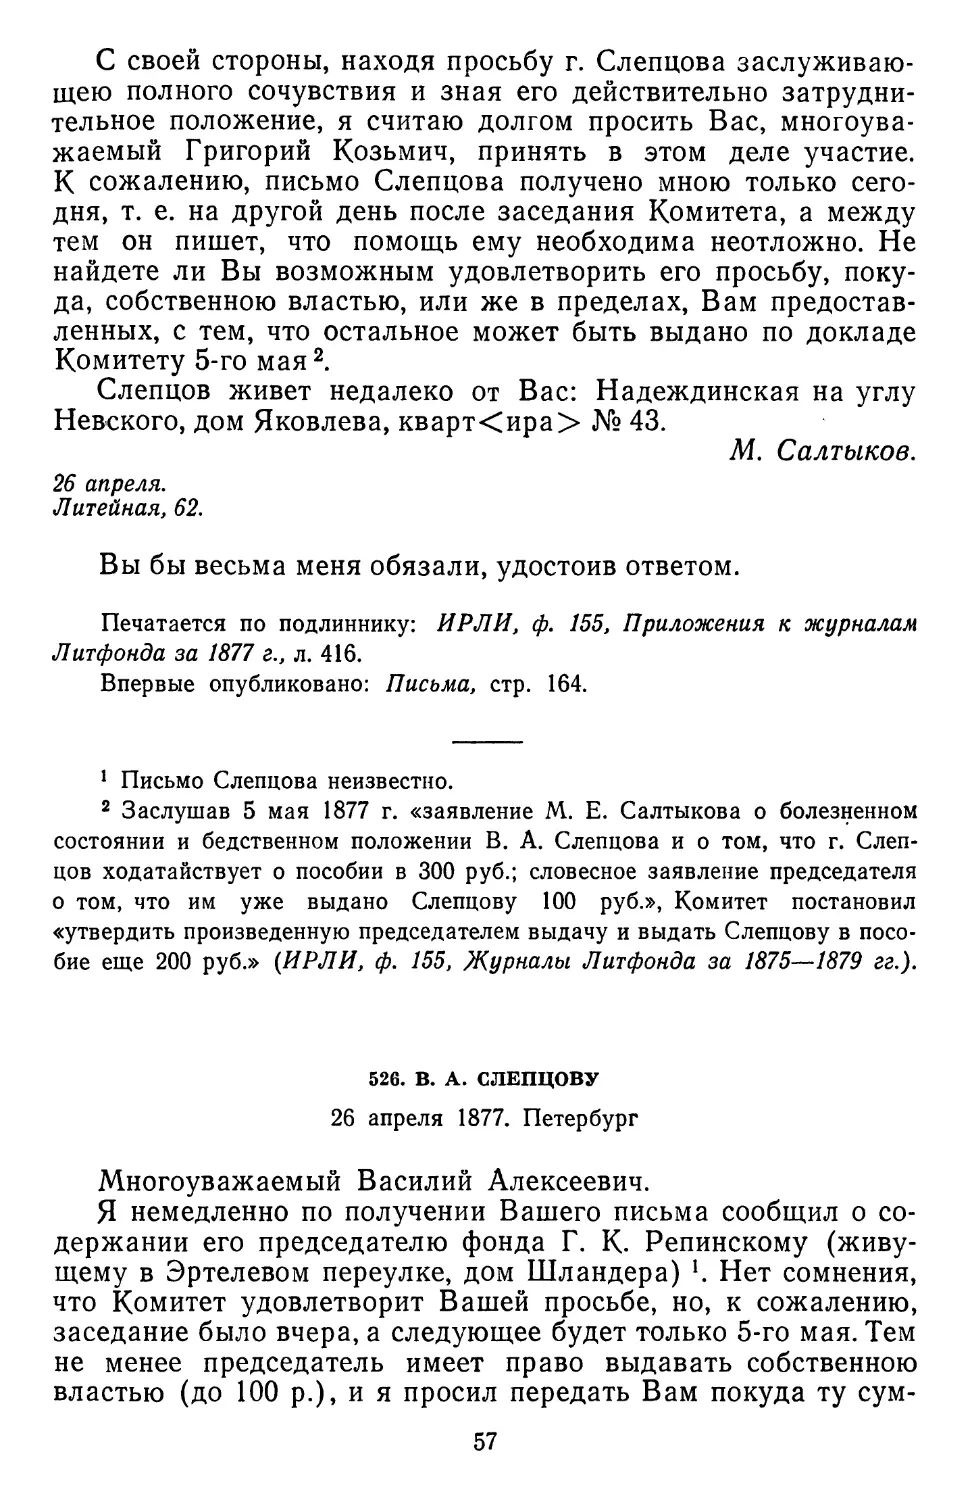 526.В. А. Слепцову. 26 апреля 1877. Петербург